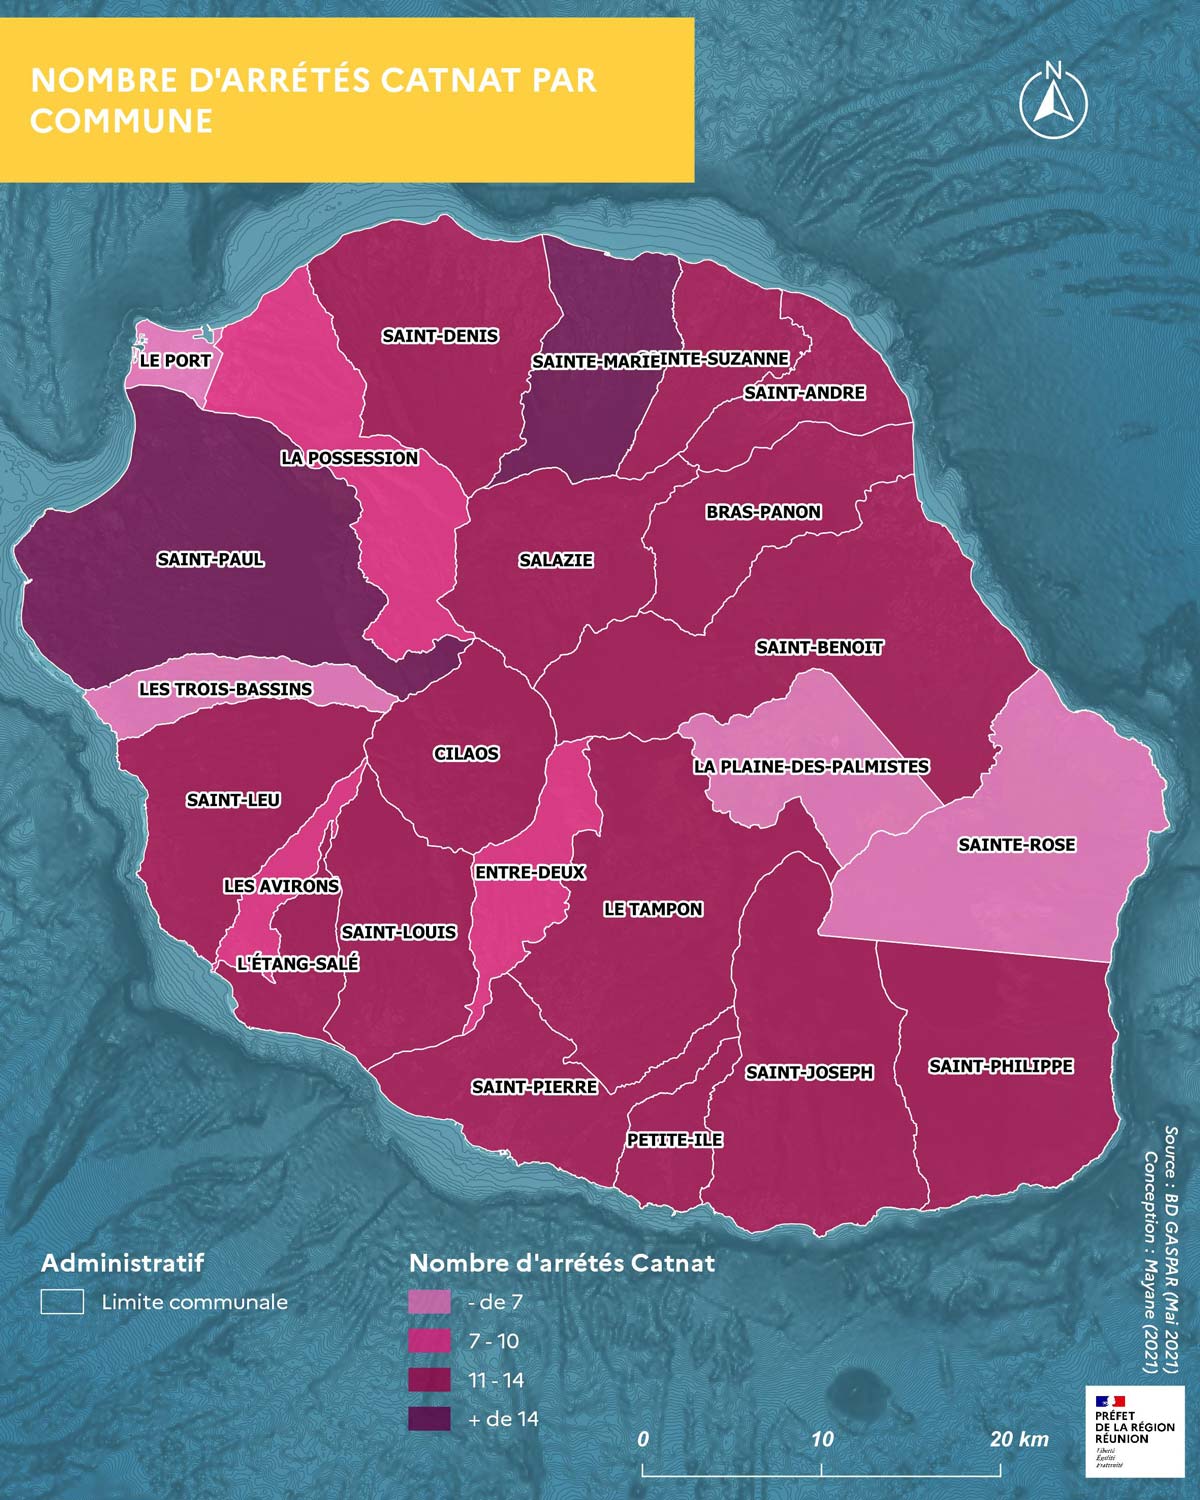 Carte du nombre d’arrêtés Catnat par commune à la Réunion.